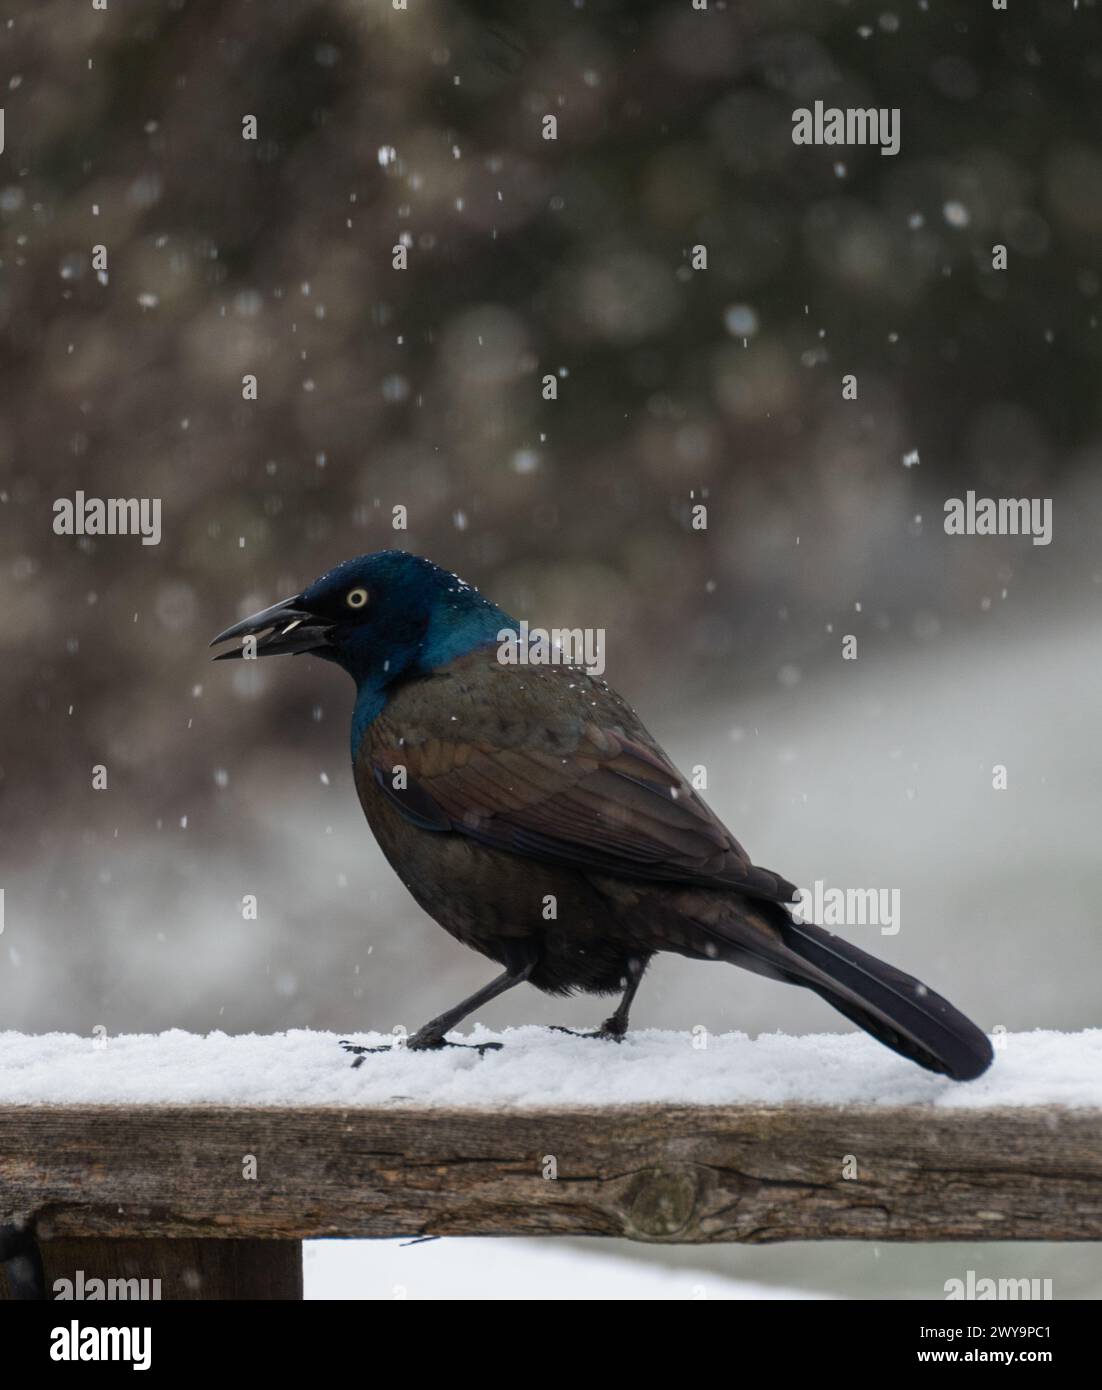 Oiseau grackle commun debout sur la balustrade un jour neigeux. Banque D'Images